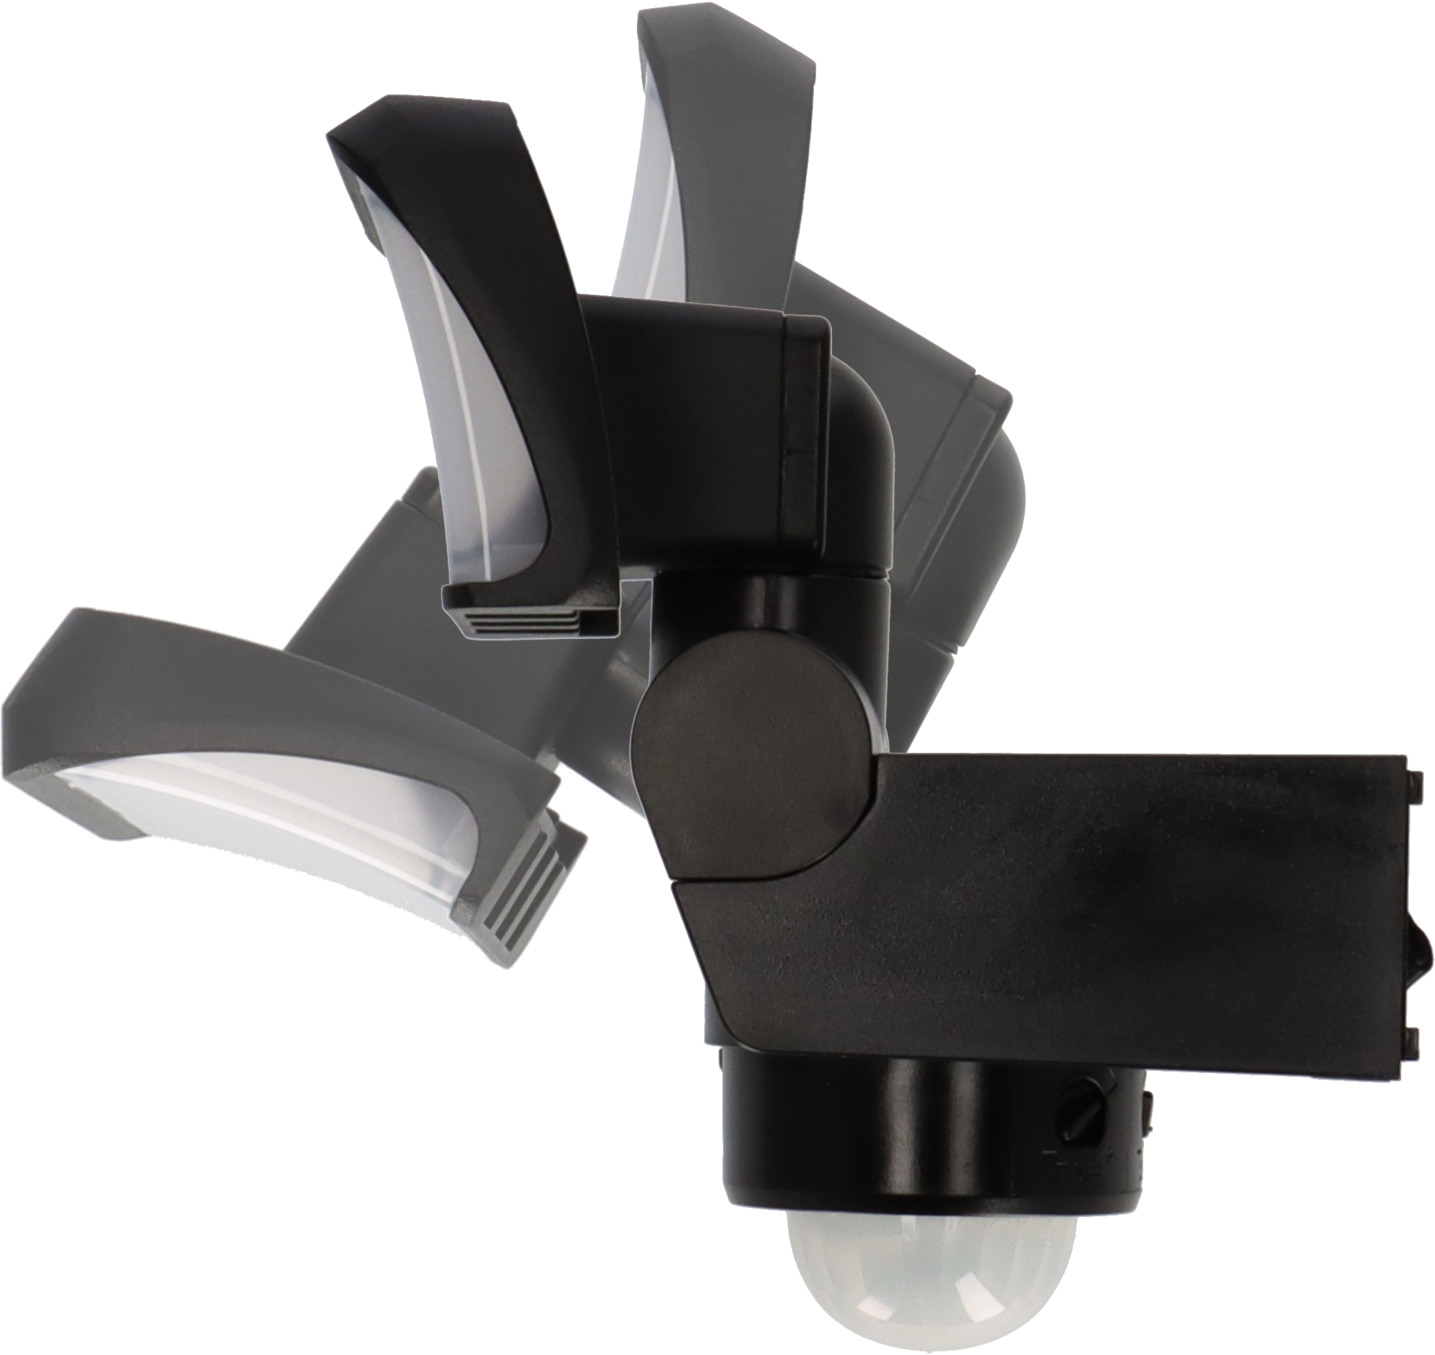 LED Strahler SP schwarz | mit 1680lm, IP44, WS 2050 brennenstuhl® Bewegungsmelder